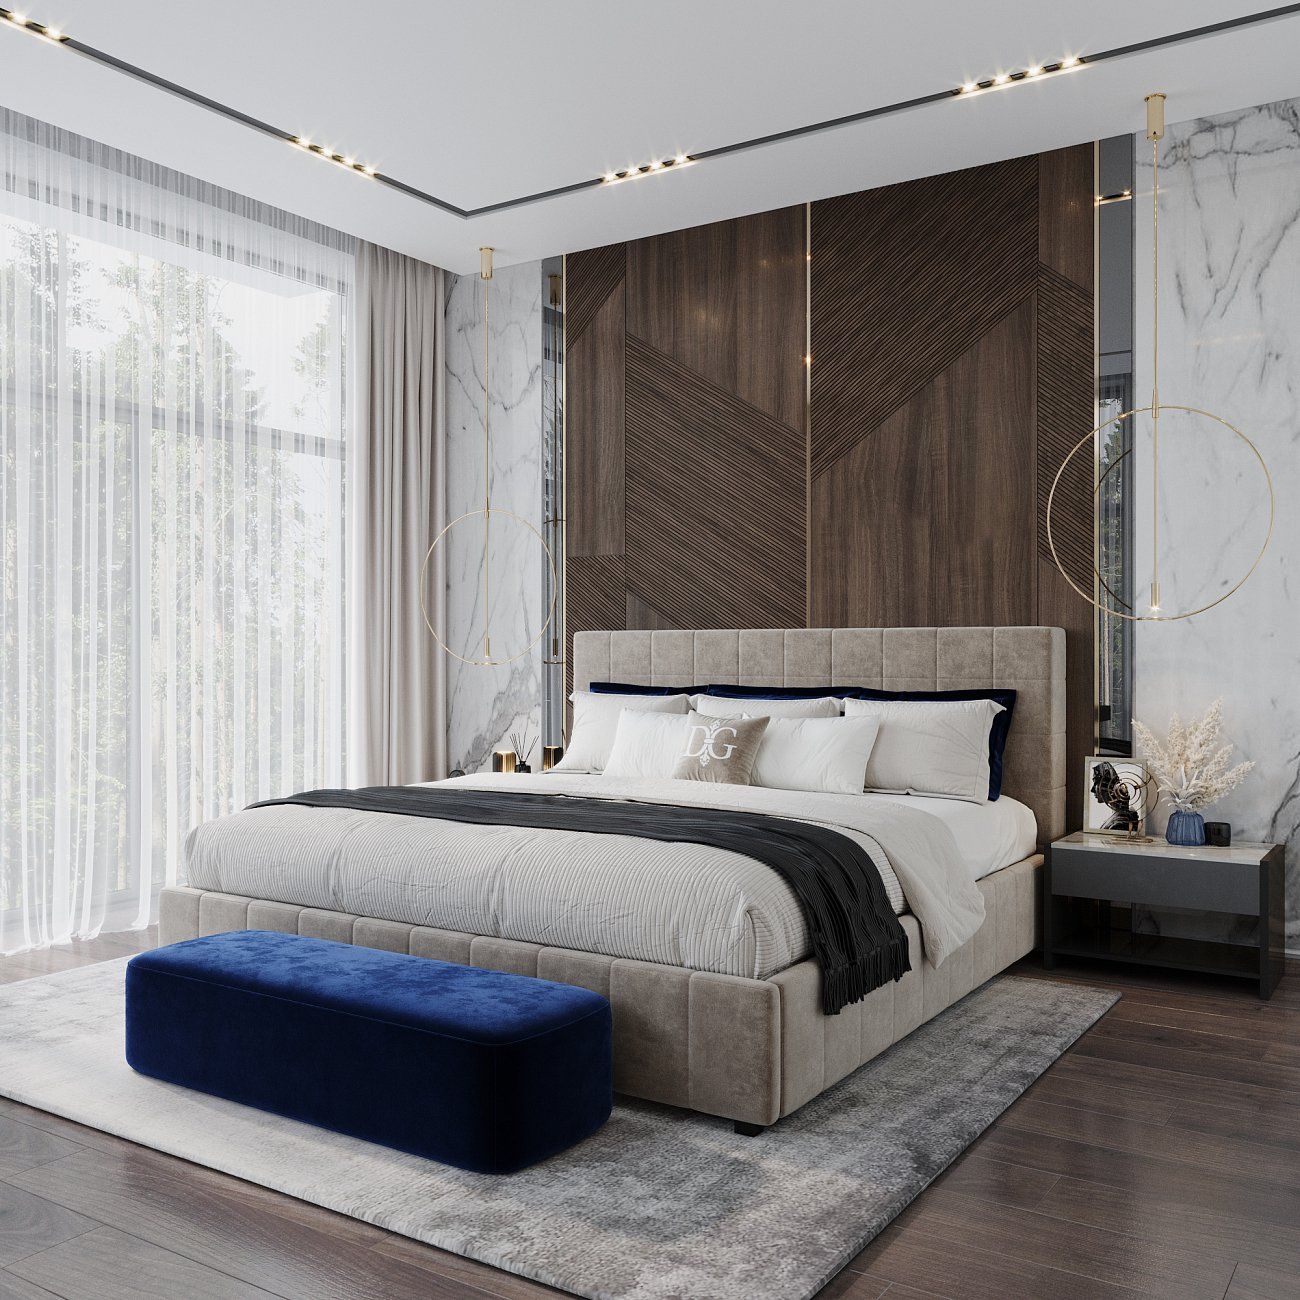 Кровать двуспальная с мягким изголовьем 180х200 см бежевая Shining Modern